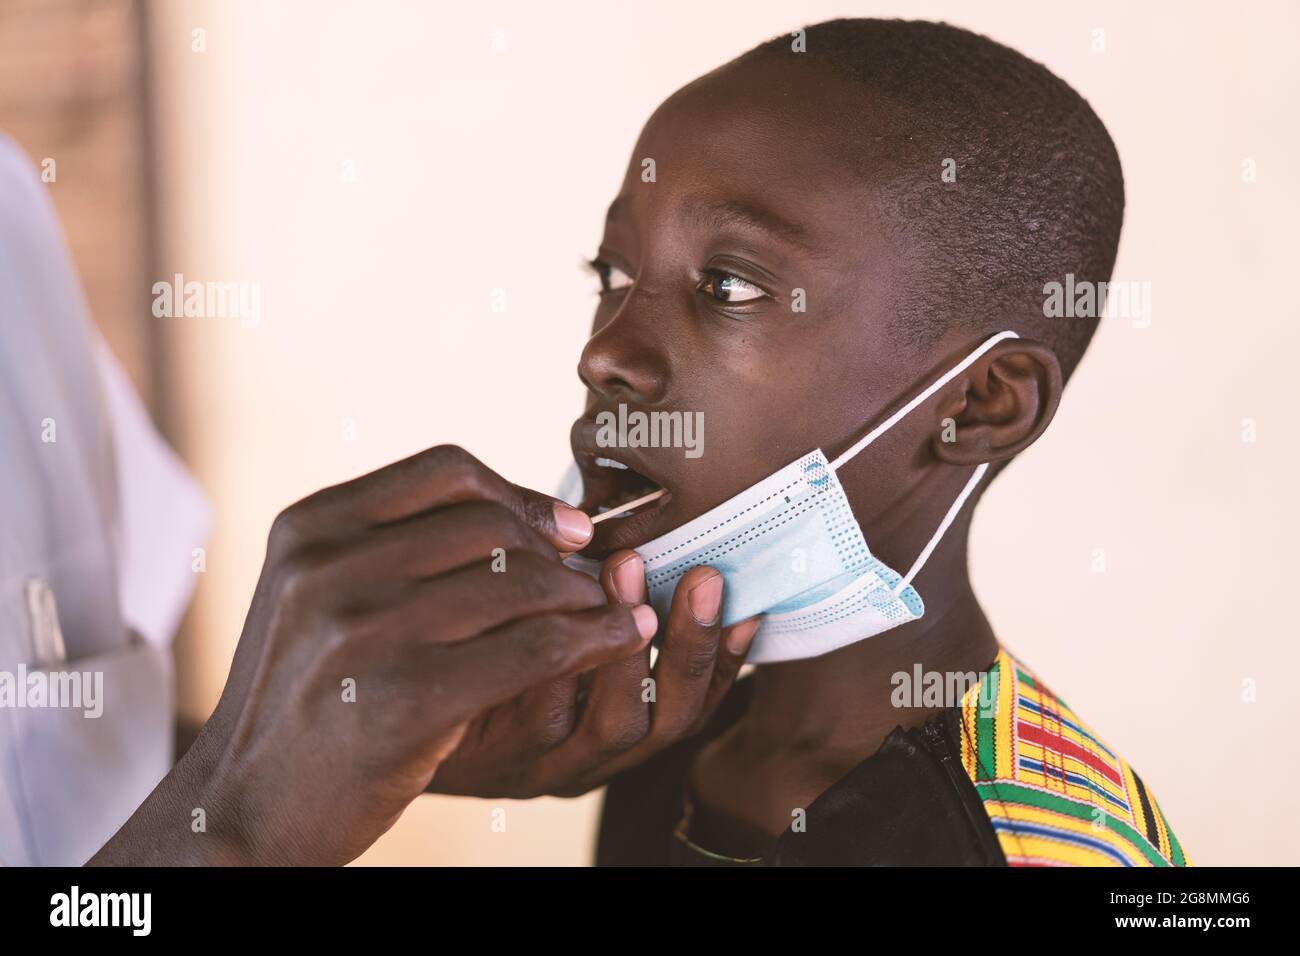 Un jeune garçon noir africain reçoit un coton-tige dans sa bouche pour tester la maladie du coronavirus à Bamako, au Mali. Banque D'Images